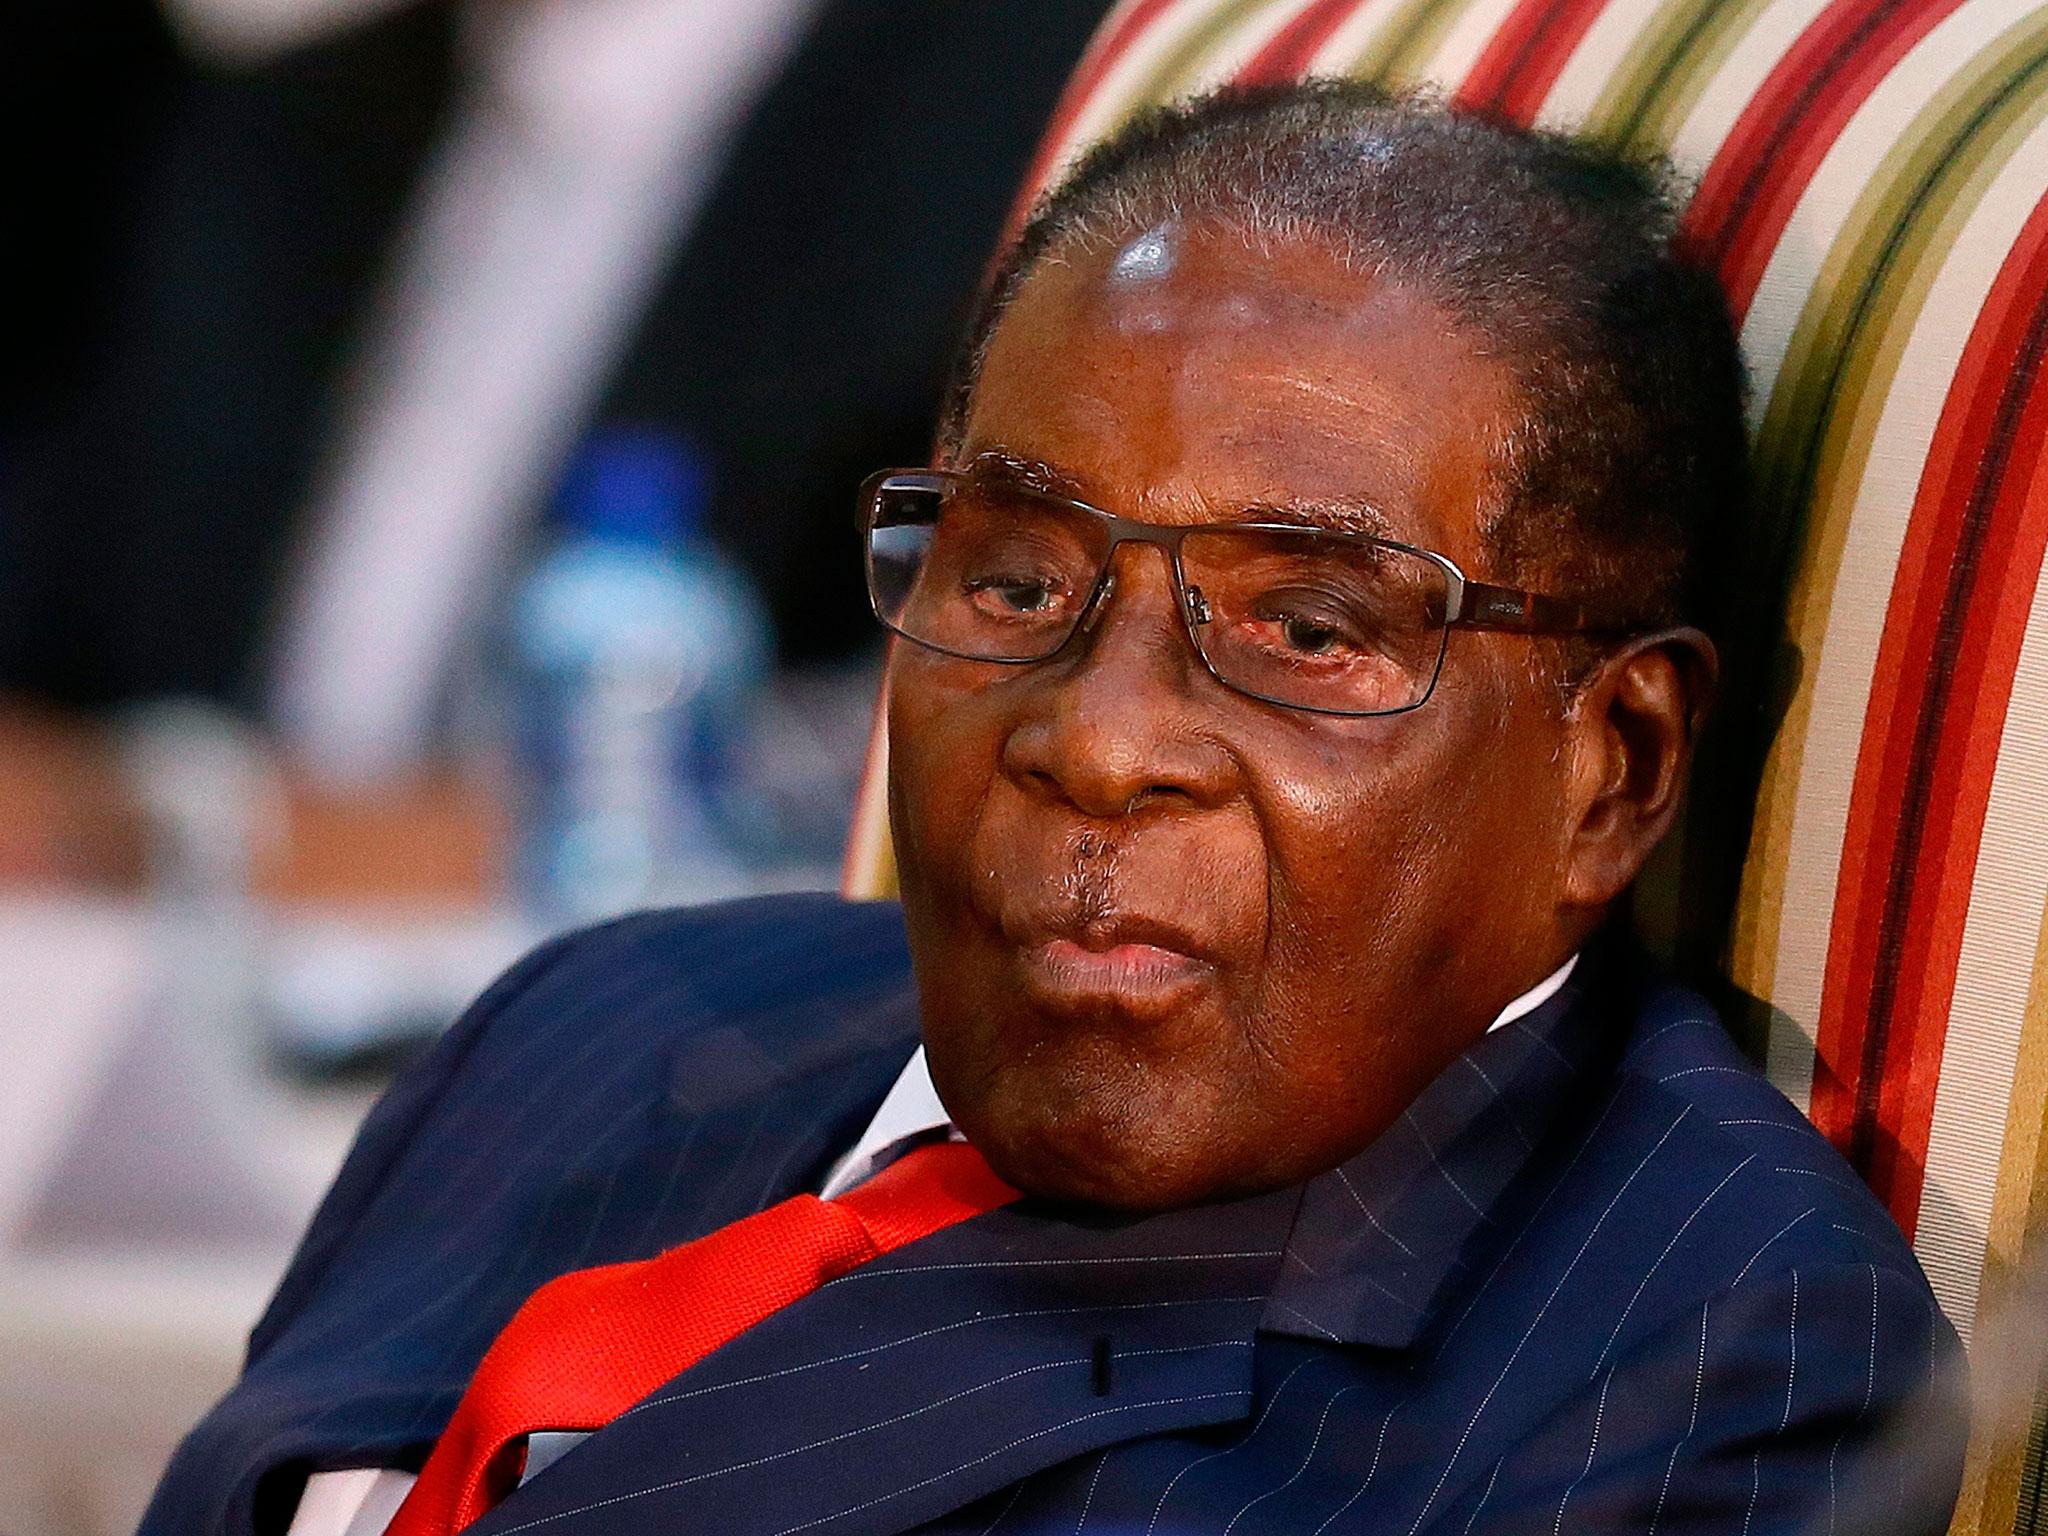 'Robert Mugabe did not resign'